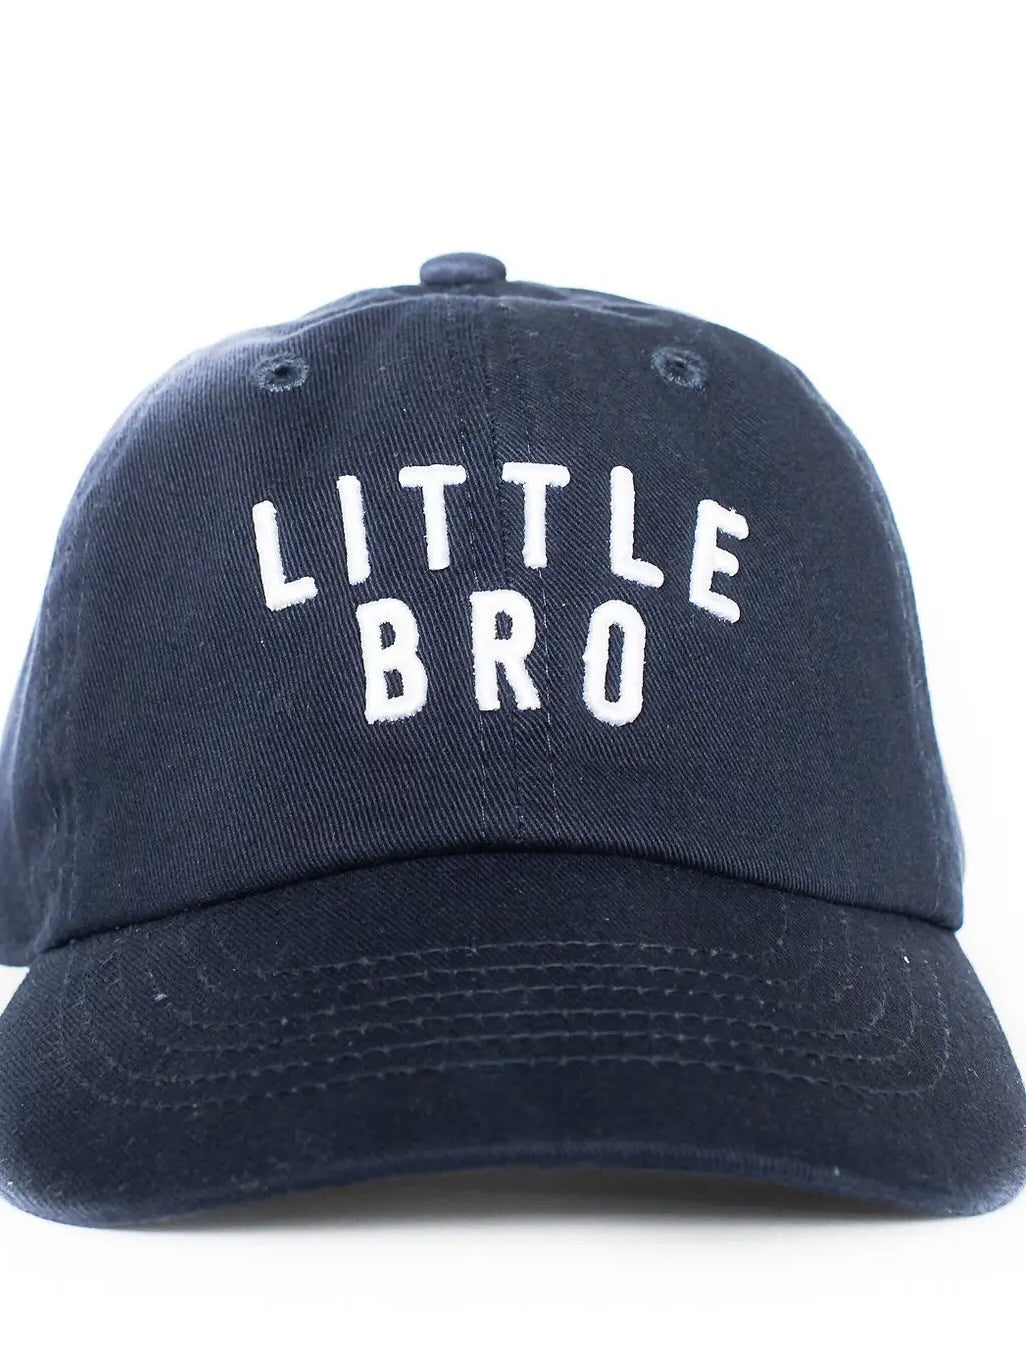 Little Bro Hat - Navy